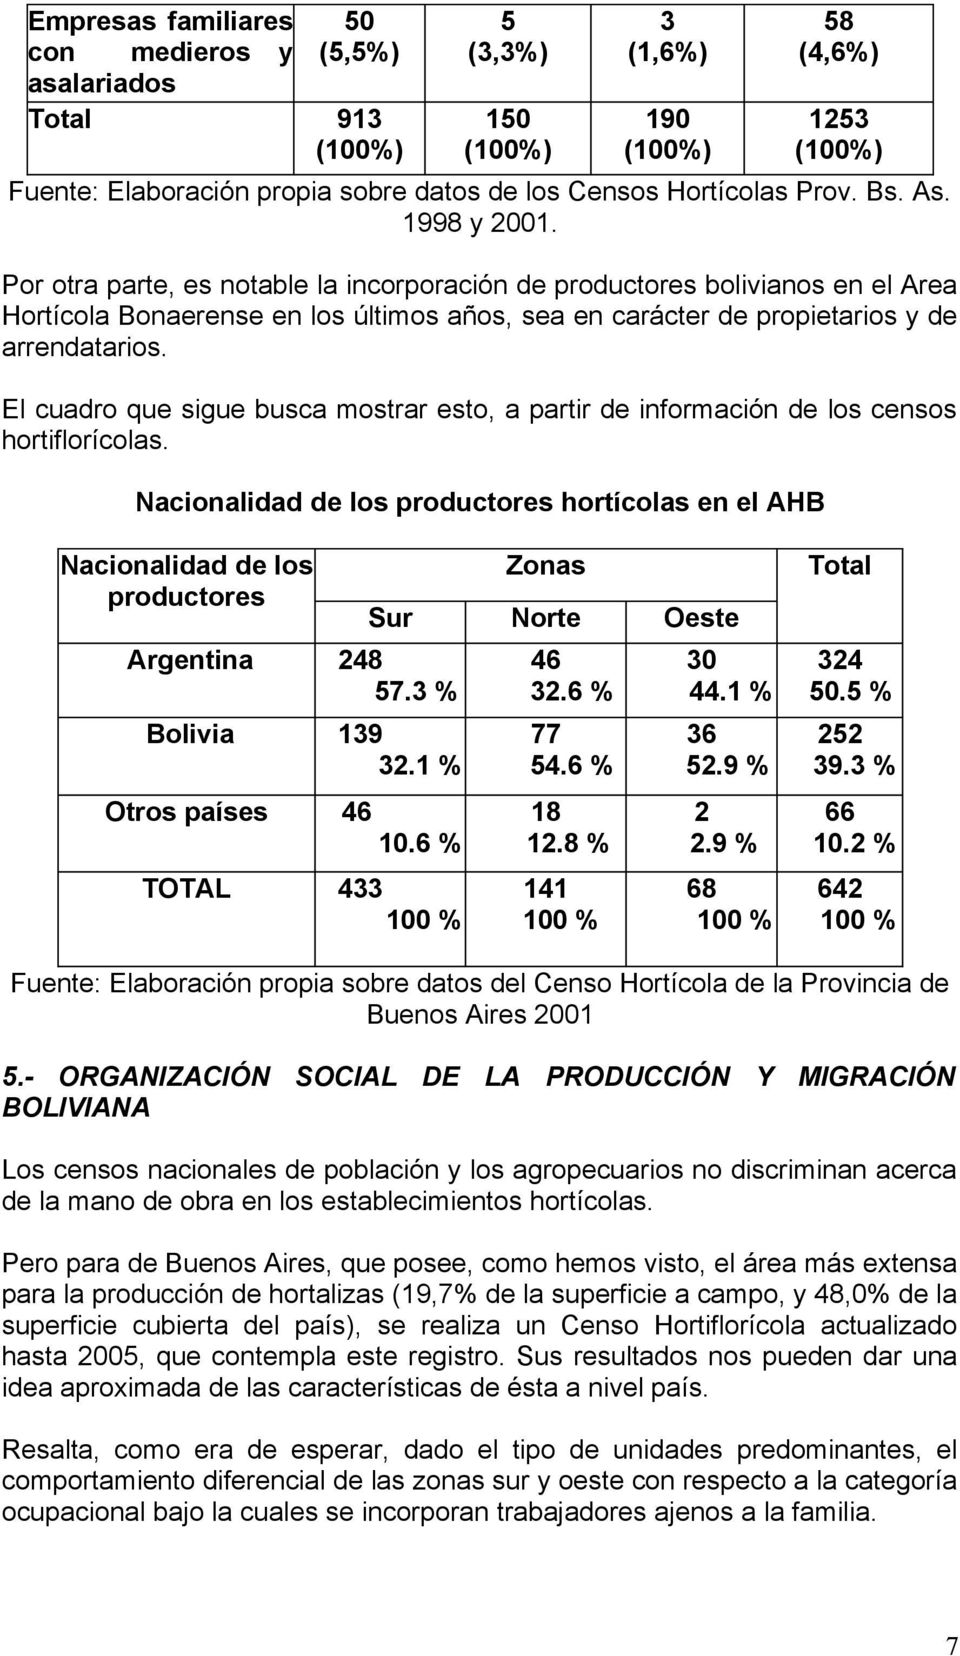 Por otra parte, es notable la incorporación de productores bolivianos en el Area Hortícola Bonaerense en los últimos años, sea en carácter de propietarios y de arrendatarios.